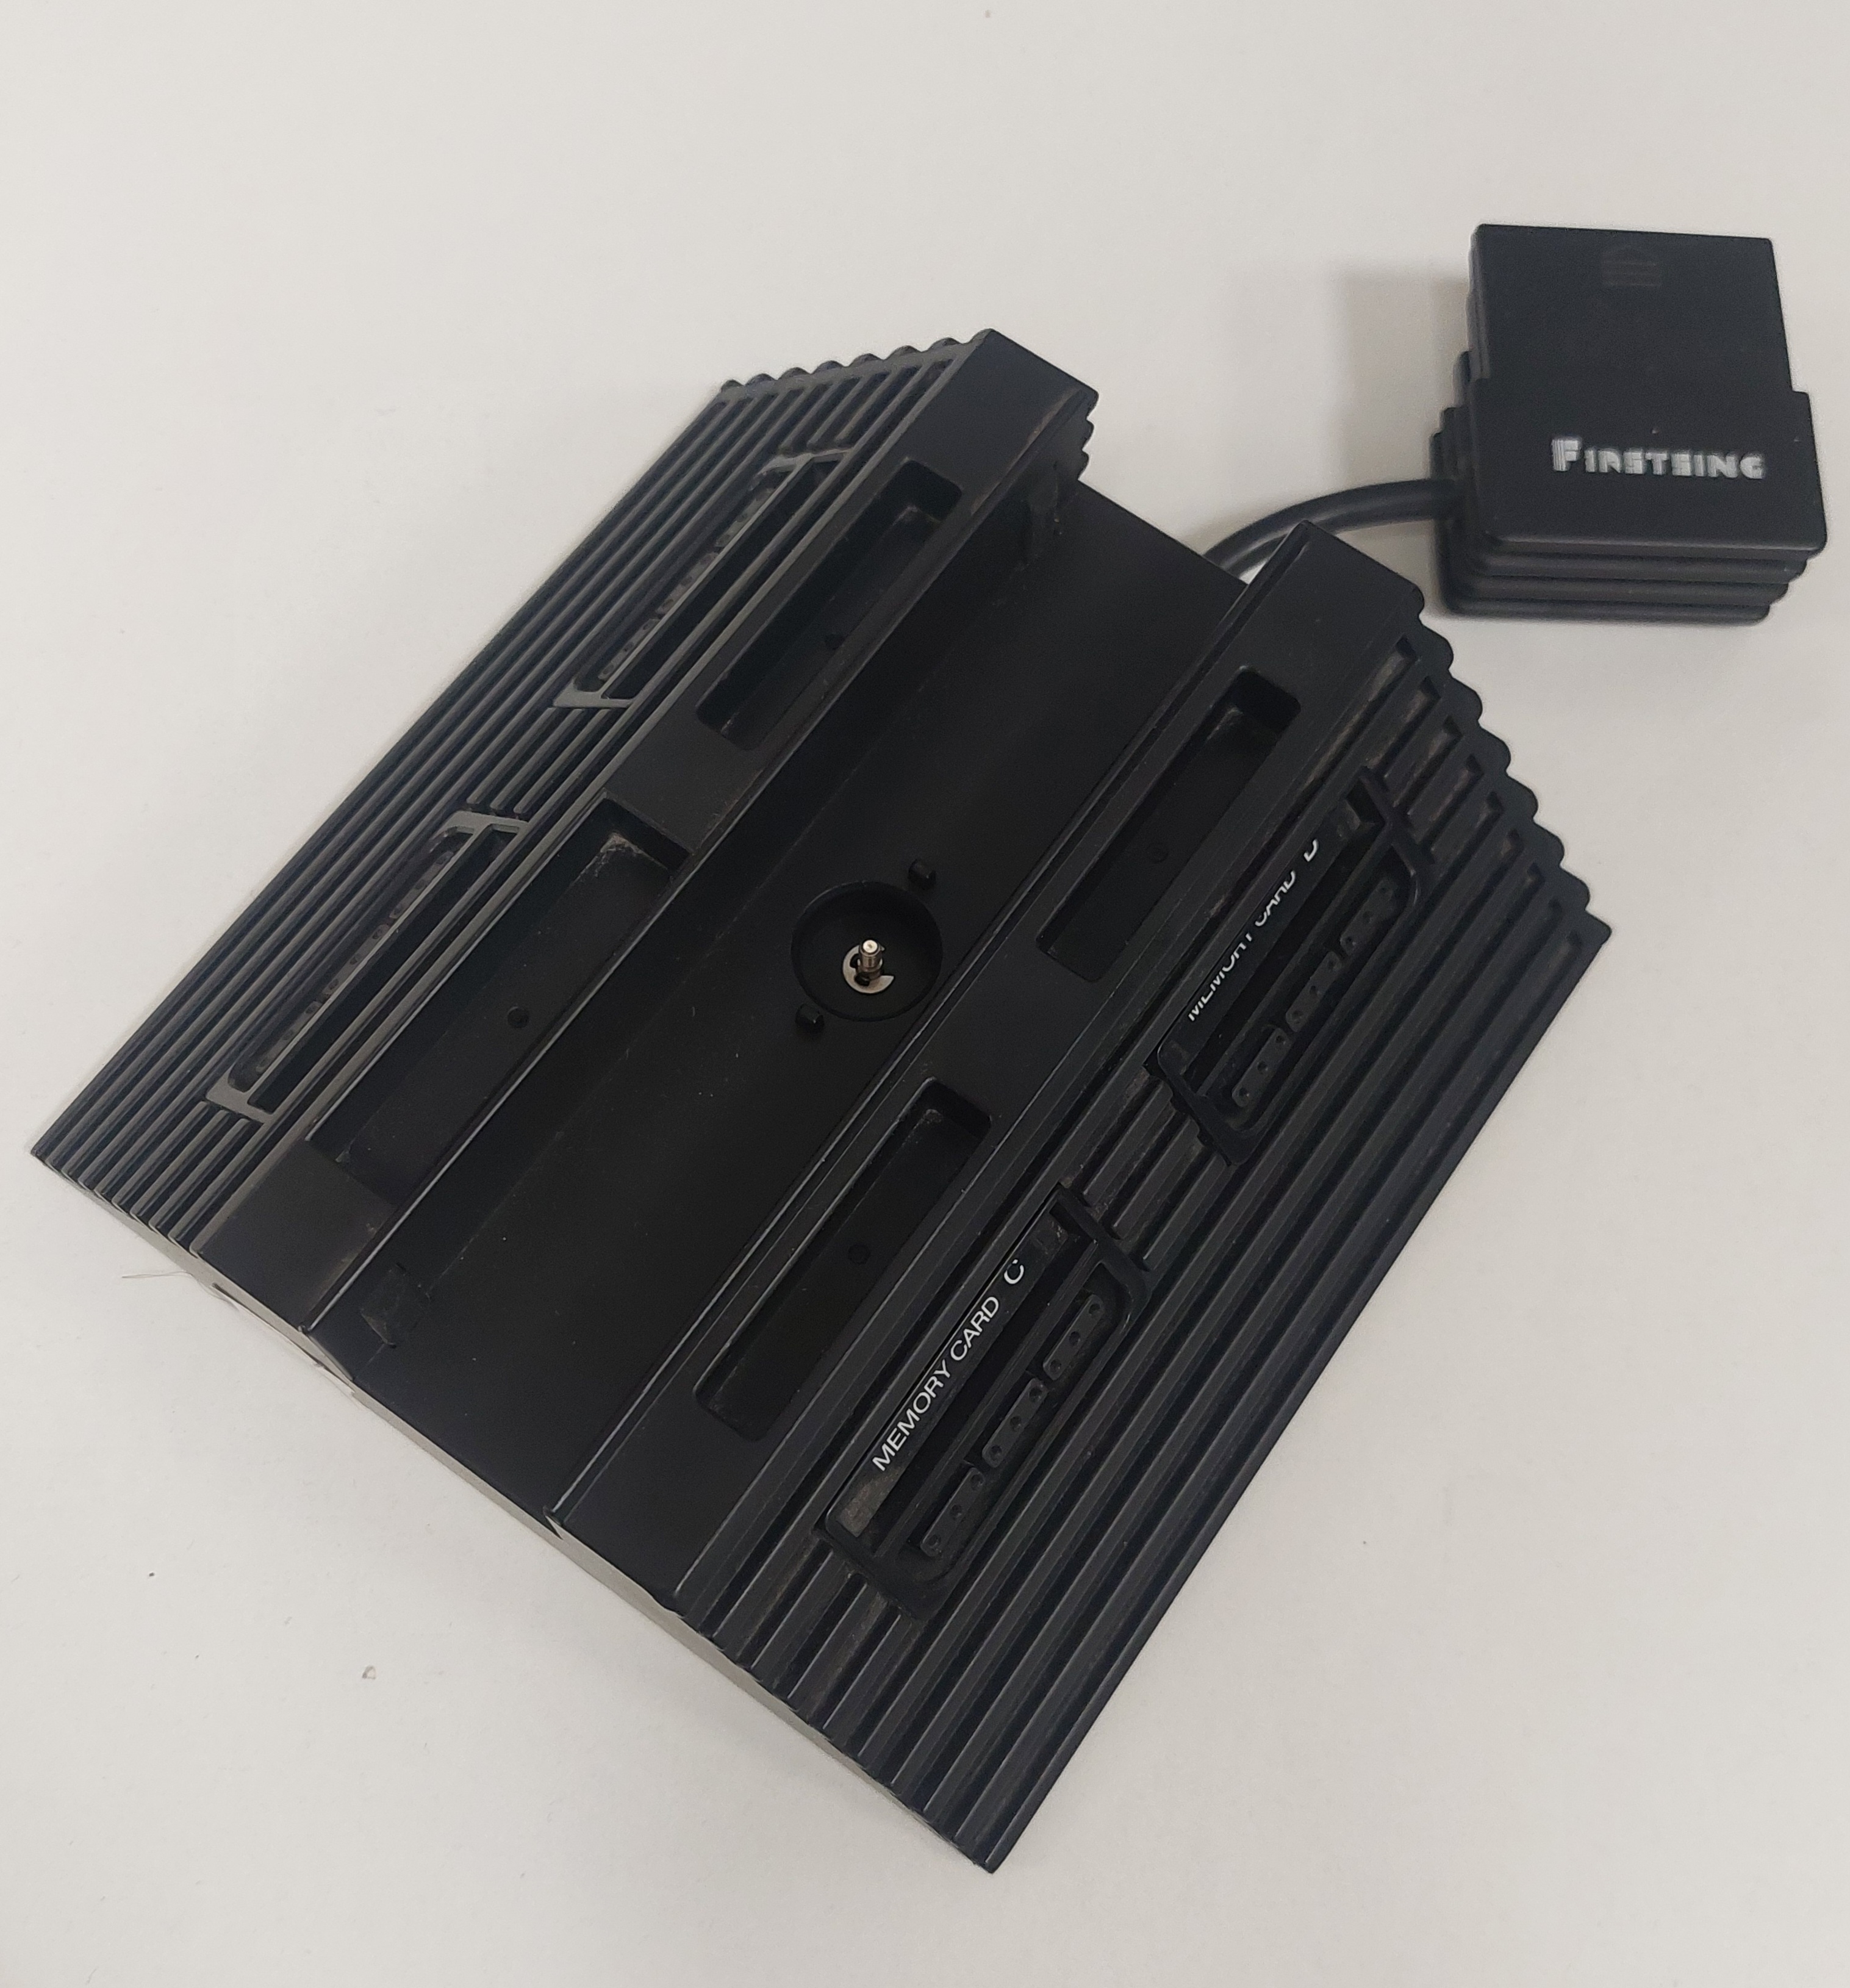 Ps2 Slim 3in1 állvány,memóriakártya elosztó, kontroller elosztó